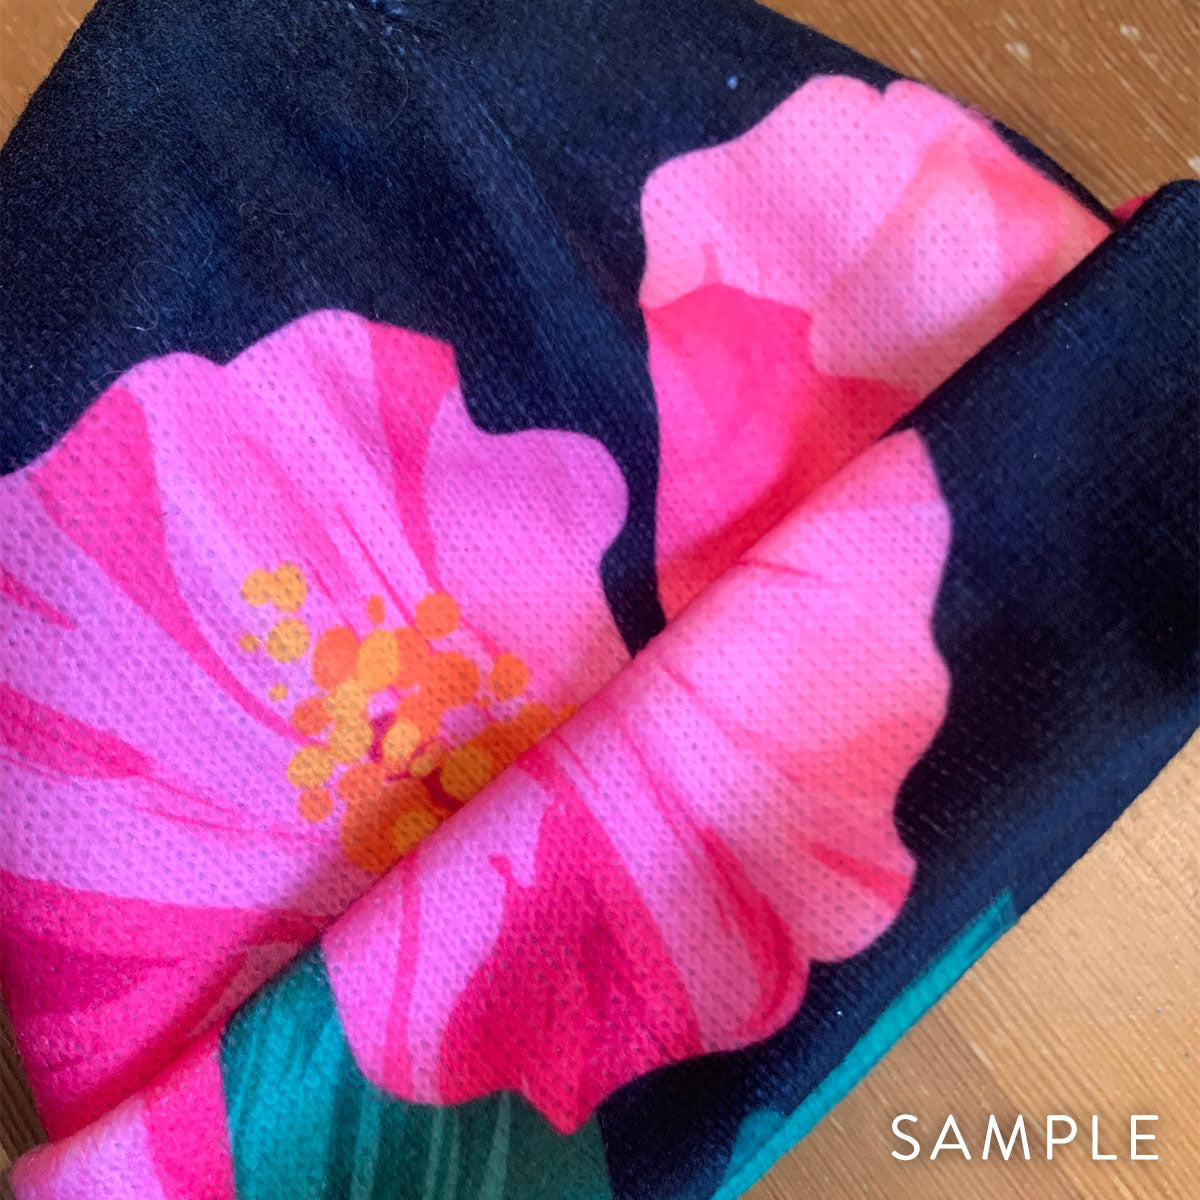 Guam Hibiscus Paradise Pink Unisex Crochet Knit Beanie Cap